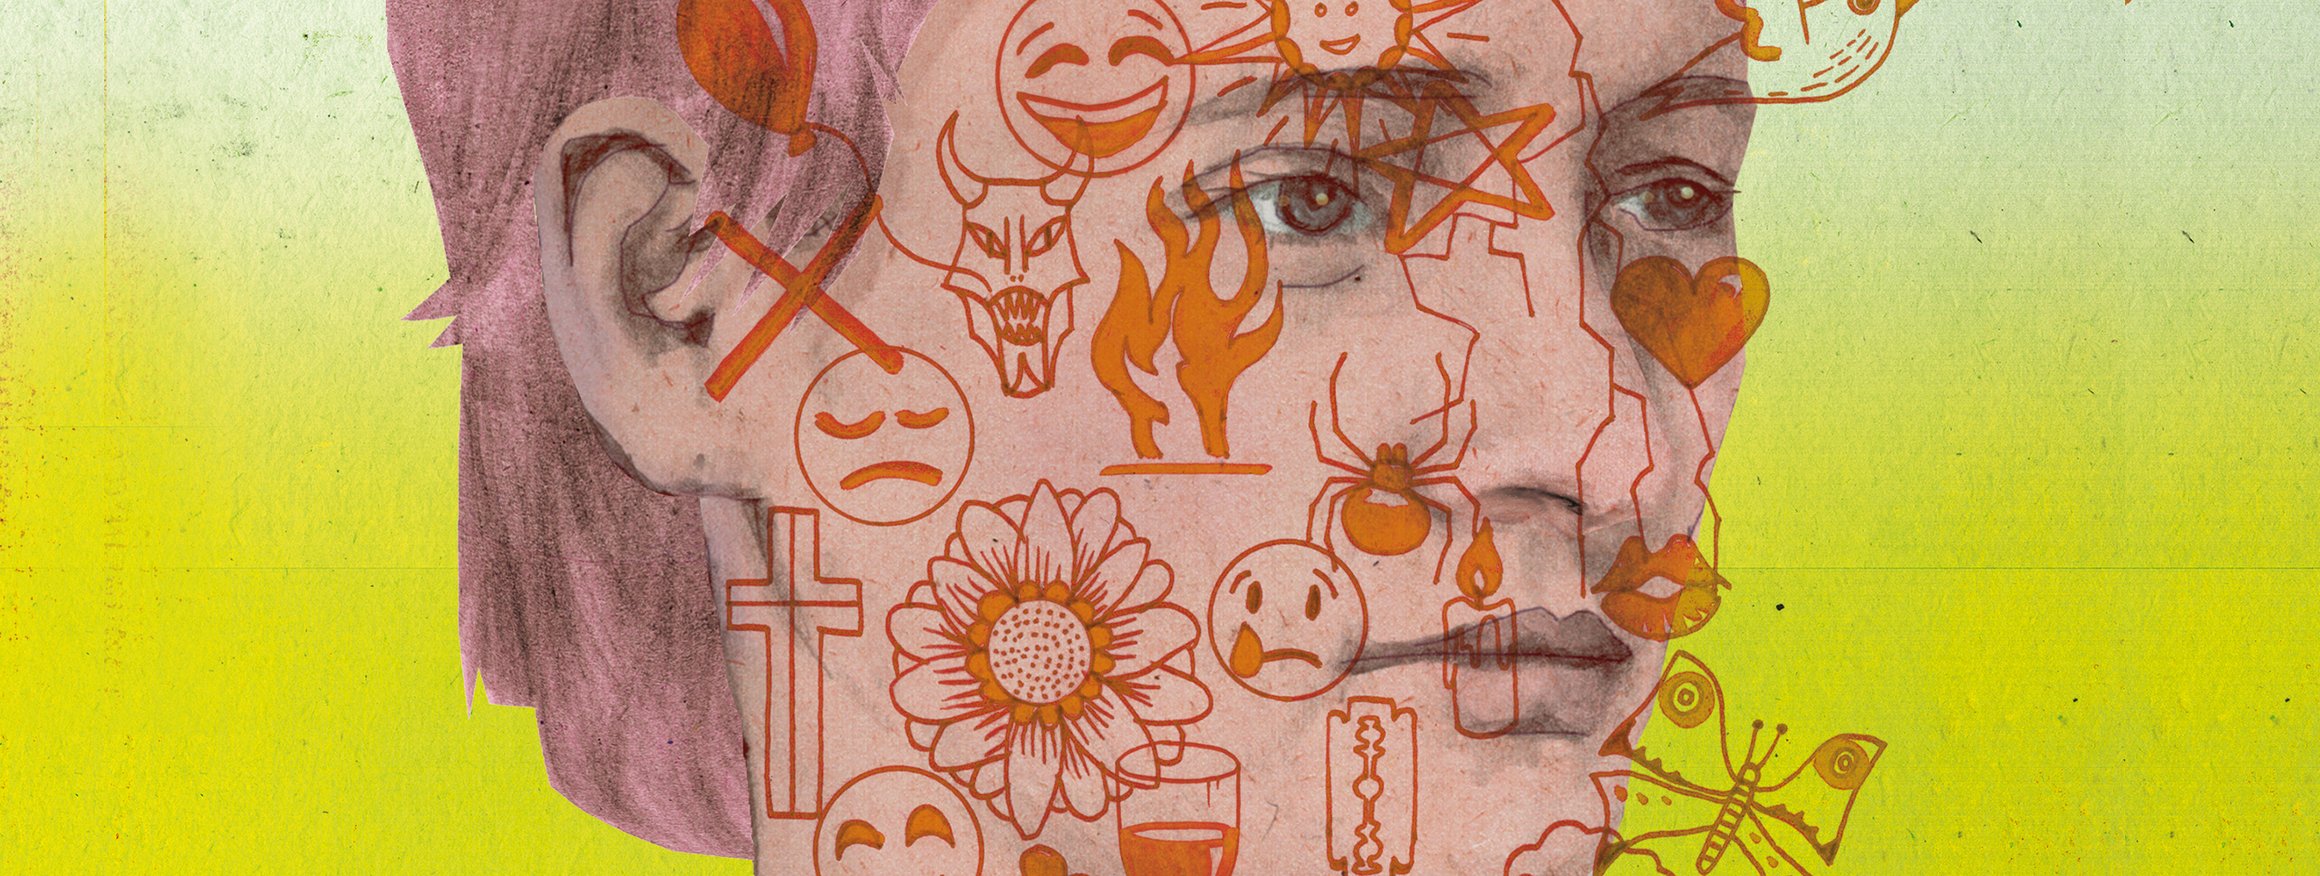 Die Illustration zeigt eine Frau mit Zeichnungen im Gesicht, die ihre vielen Gefühle zeigen